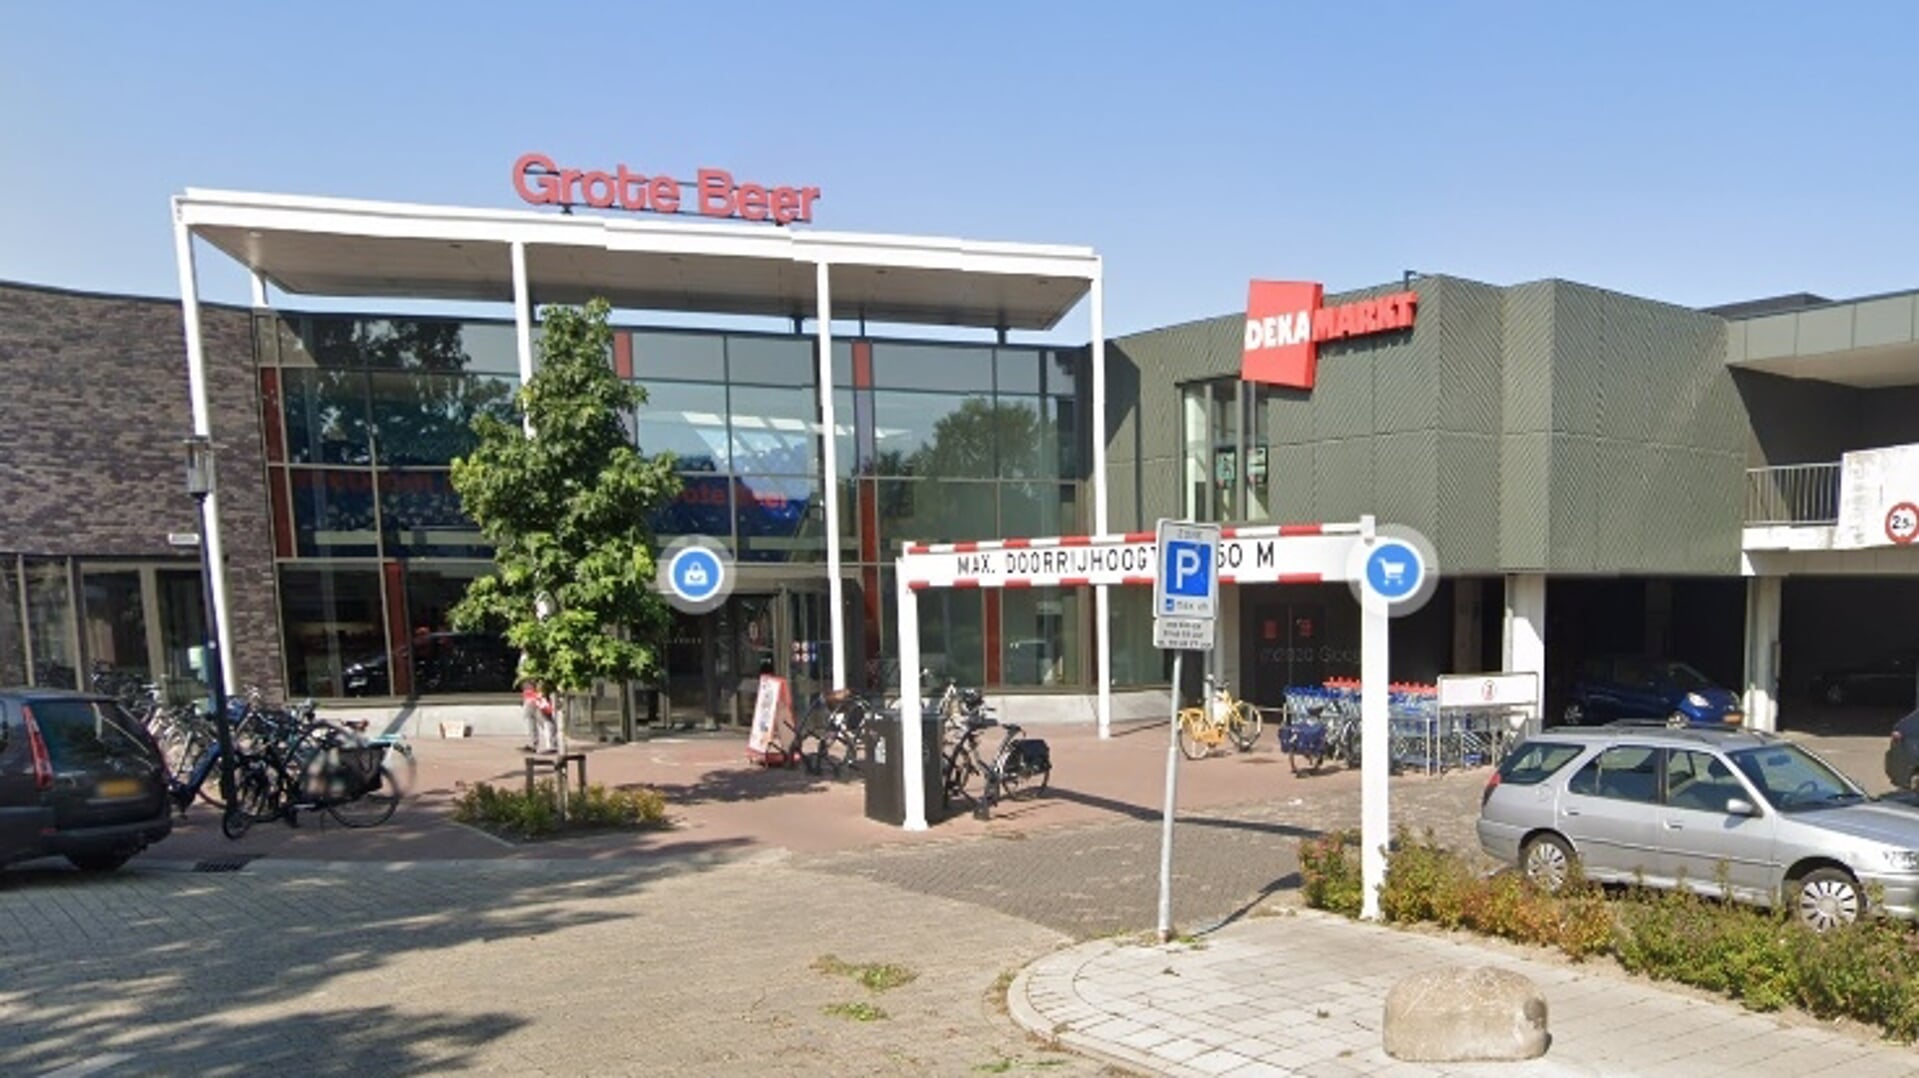 Winkelcentrum Grote Beer in Hoorn.